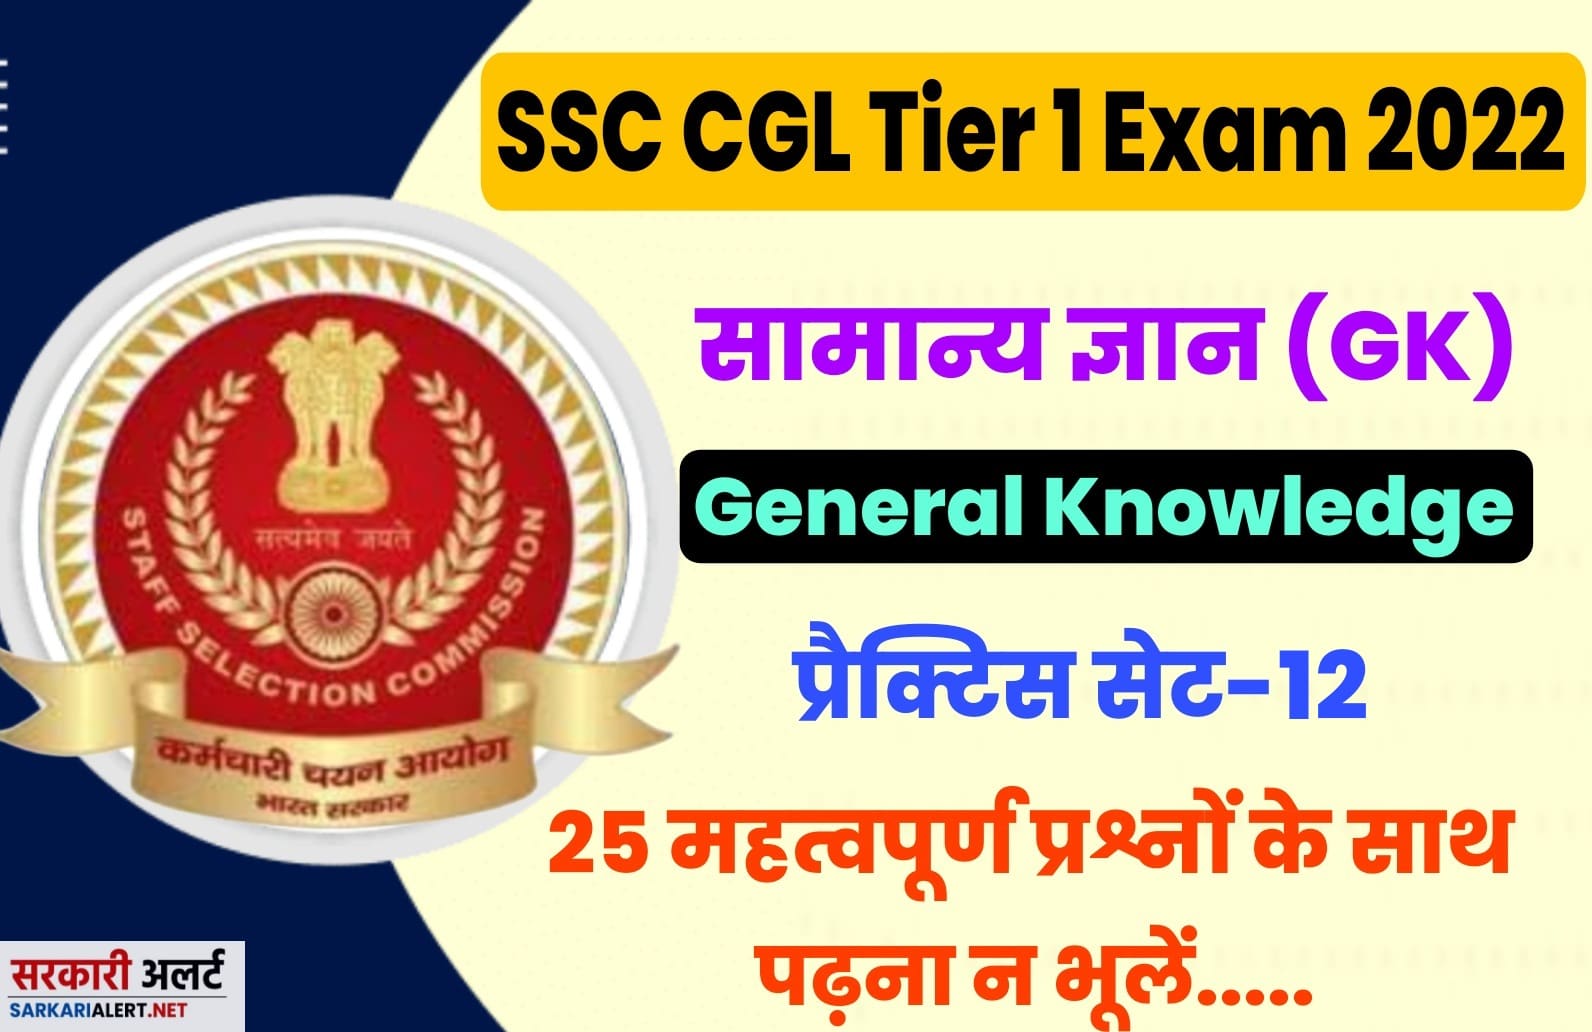 SSC CGL Tier I Exam 2022 GK Practice Set 12 | परीक्षा हॉल में जाने से पहले अतिमहत्वपूर्ण प्रश्नों का अध्ययन अवश्य करें